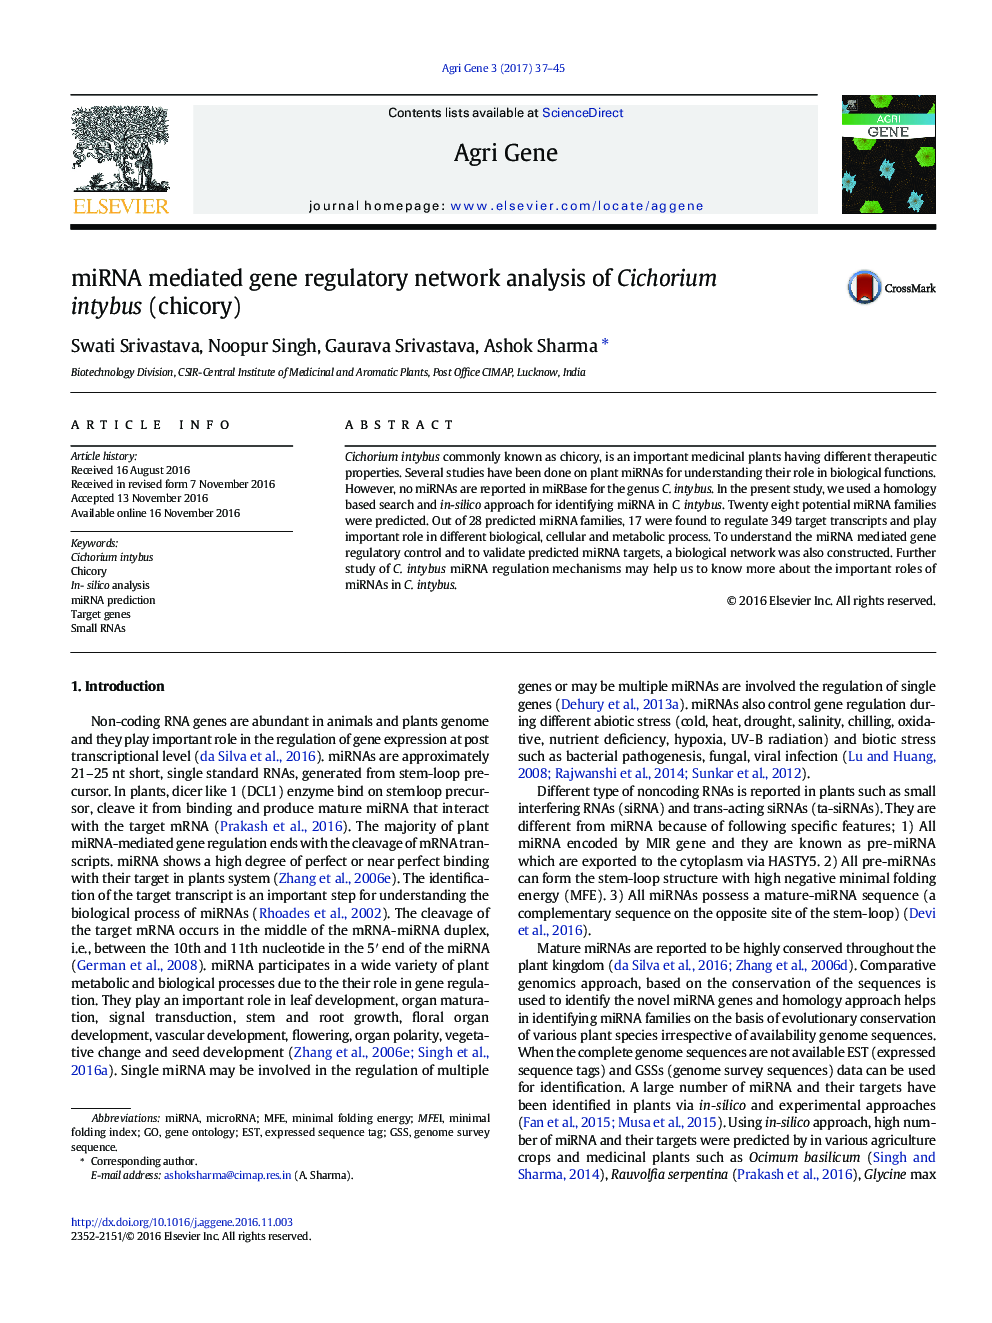 miRNA mediated gene regulatory network analysis of Cichorium intybus (chicory)